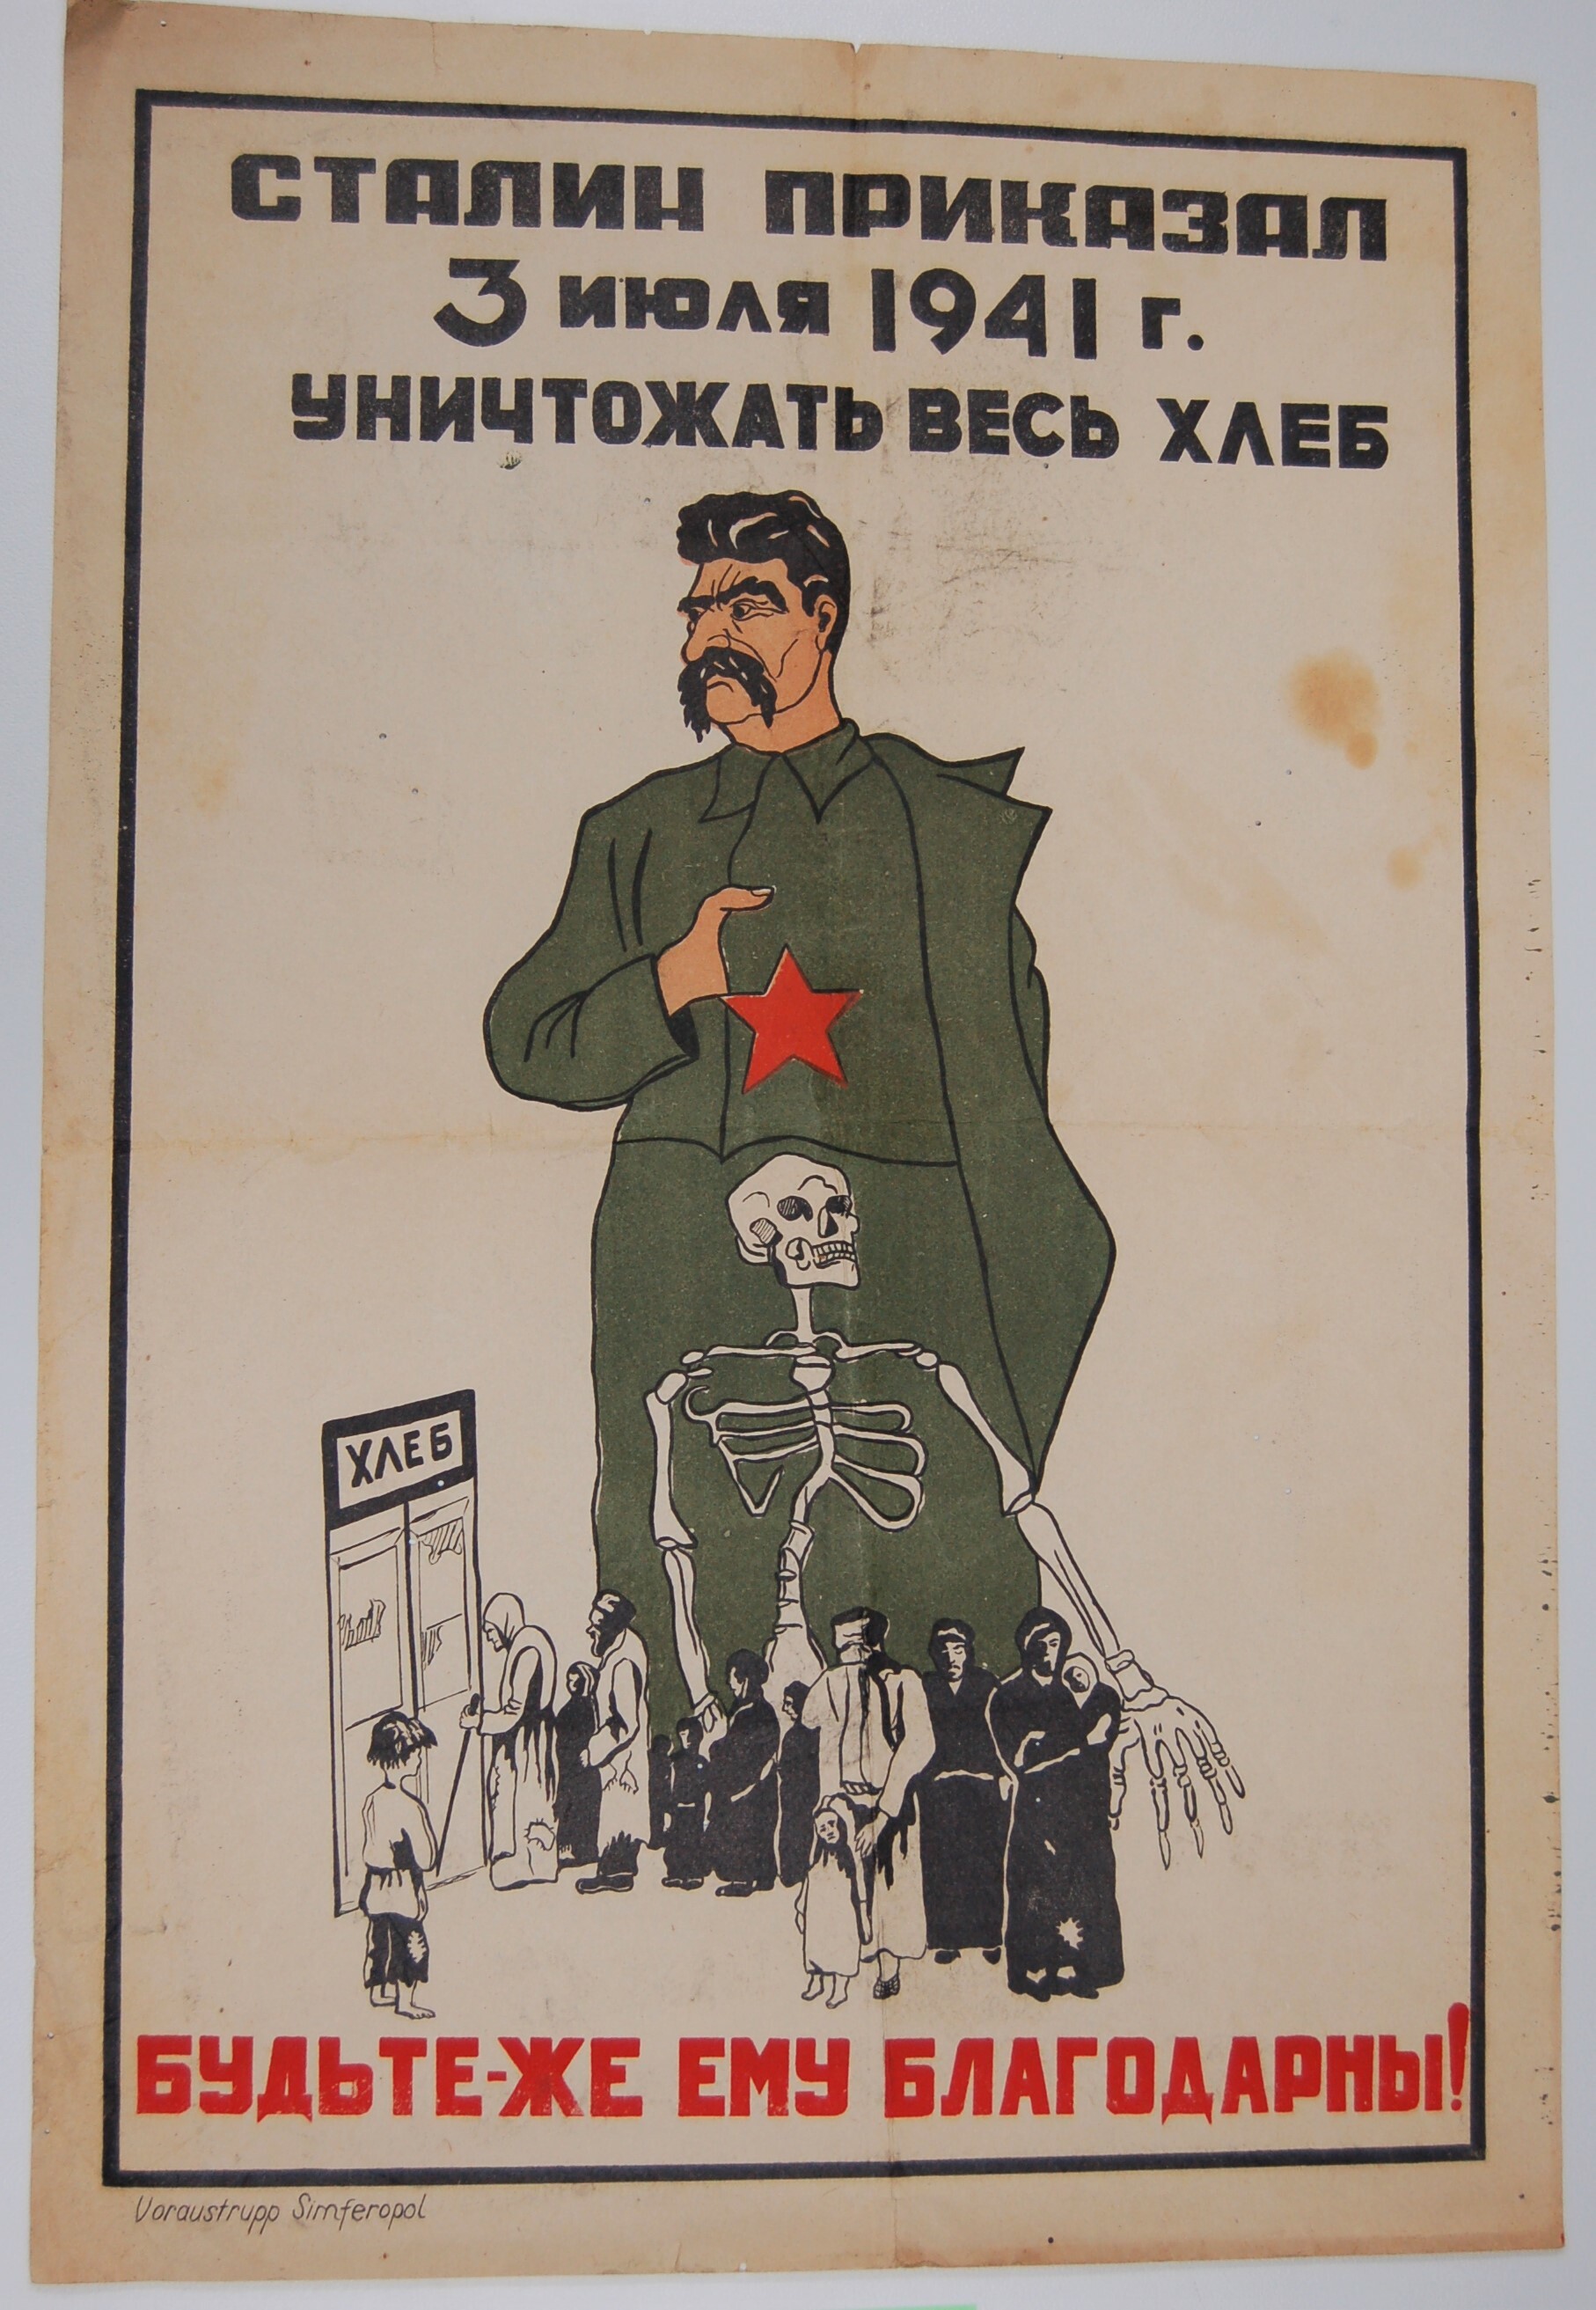 Plakat der deutschen Besatzer an die einheimische Bevölkerung, Sowjetunion 1941 (Deutsch-Russisches Museum Berlin-Karlshorst CC BY-NC-SA)